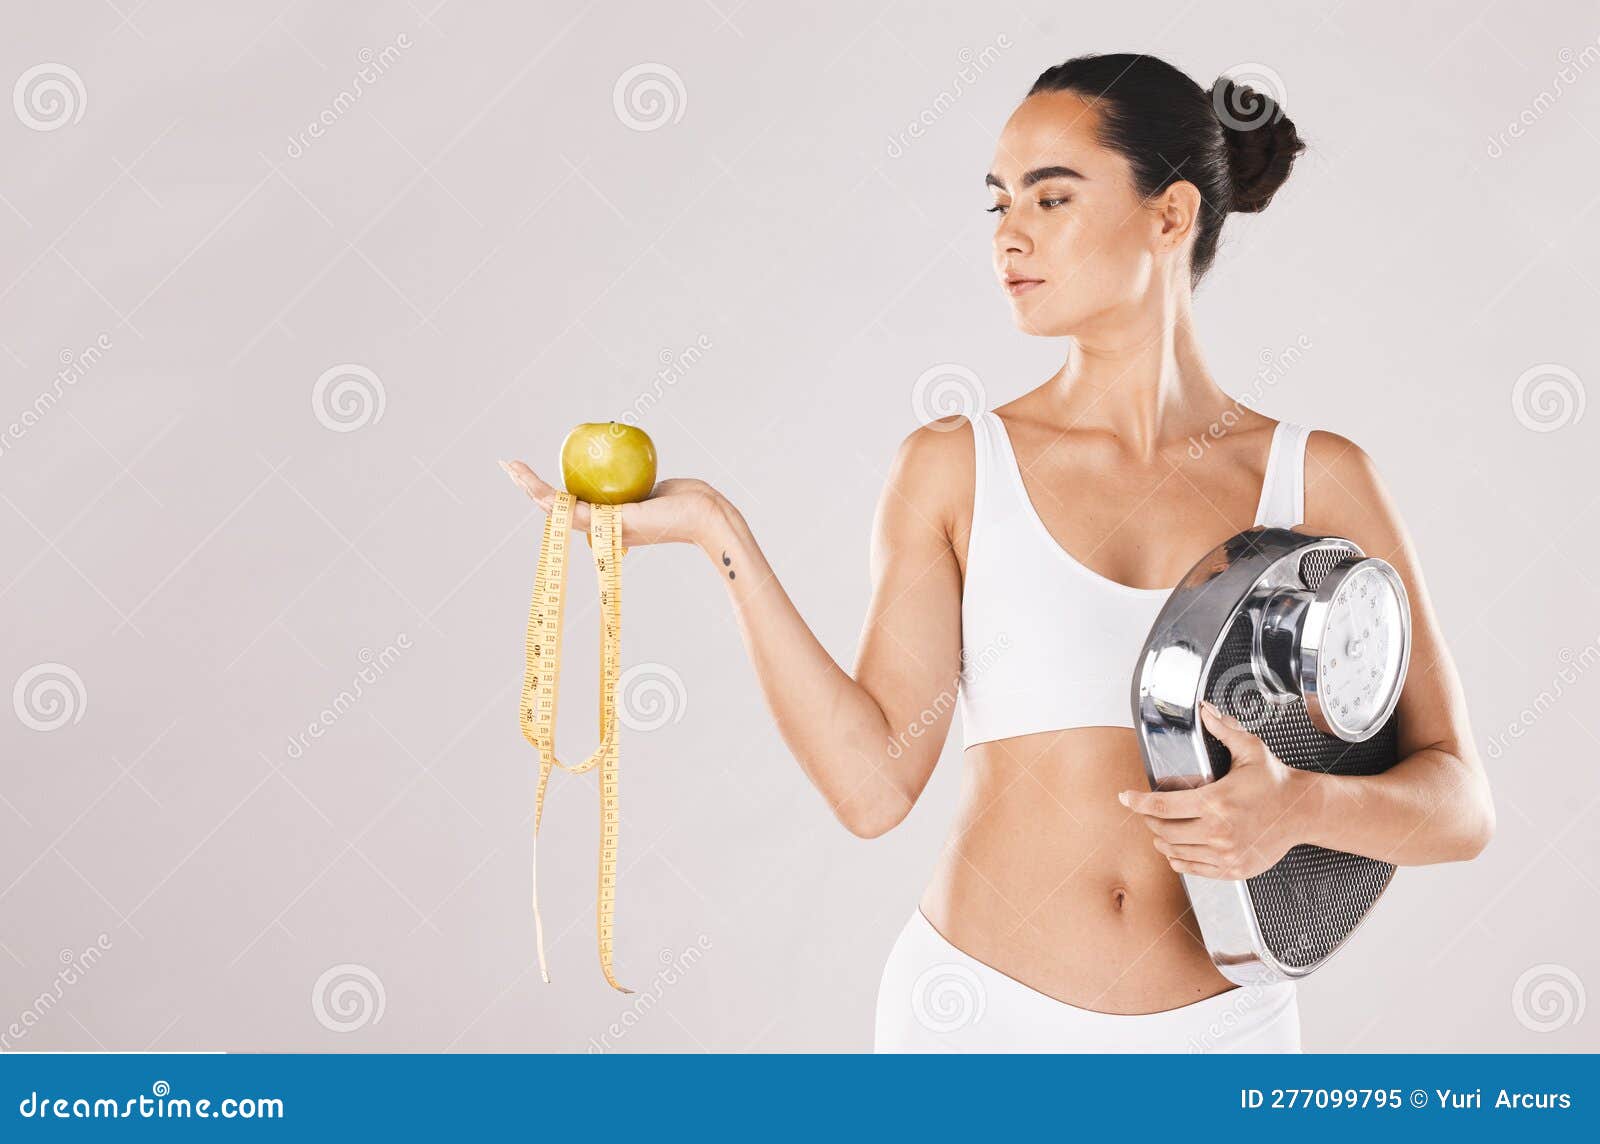 Fitness Santé Et Femme Avec L'échelle Et La Pomme Pour Poids Diète Et  Nutrition Sur Fond Blanc Studio. Exercice Image stock - Image du pomme,  athlète: 277099795